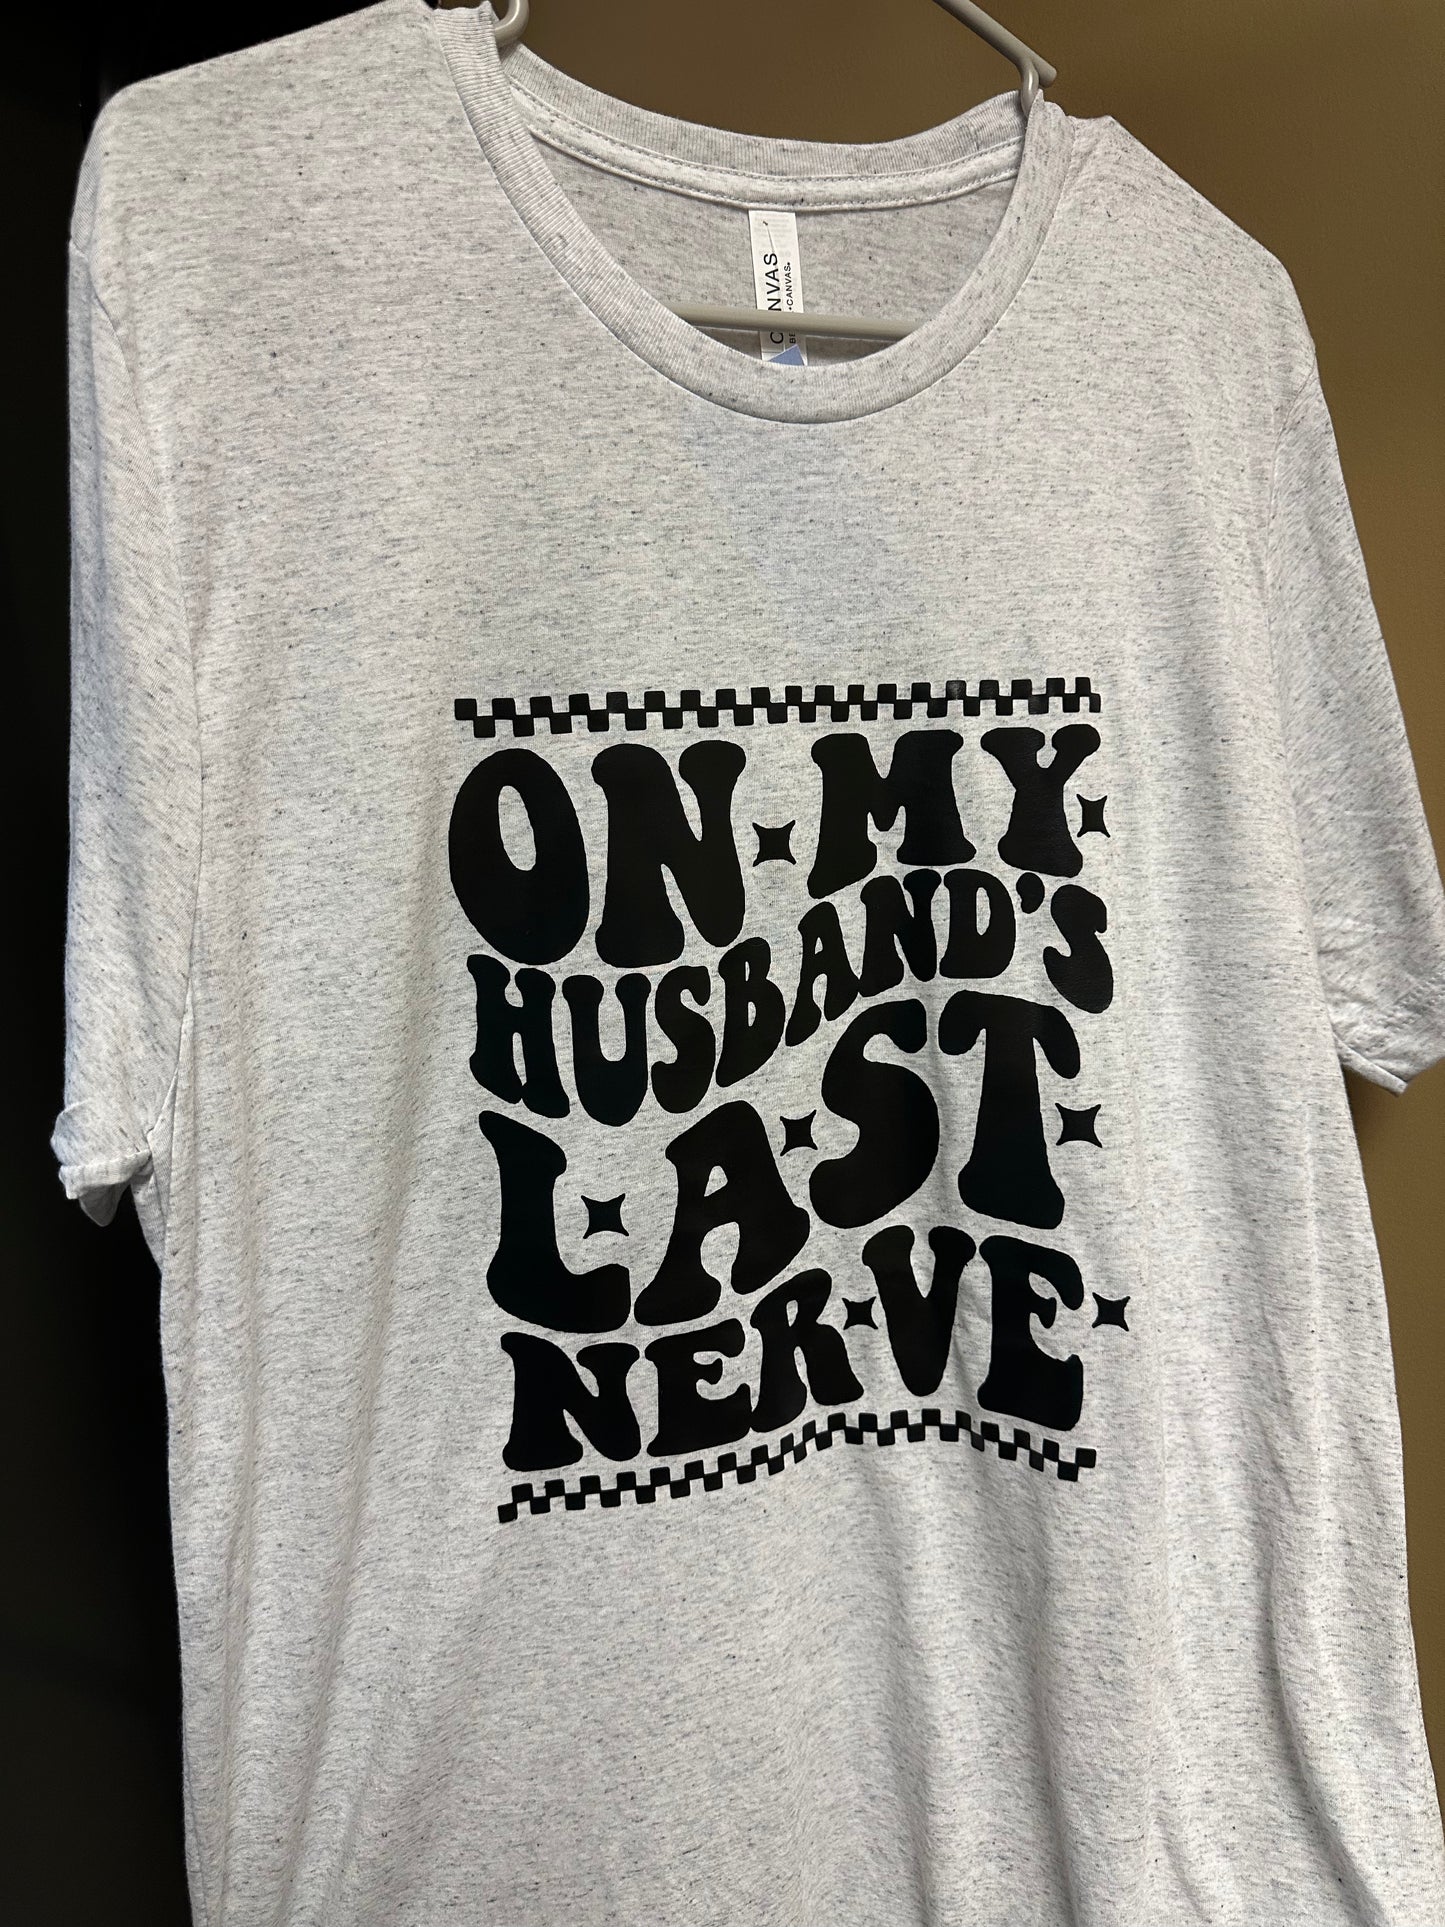 Husbands Last Nerve